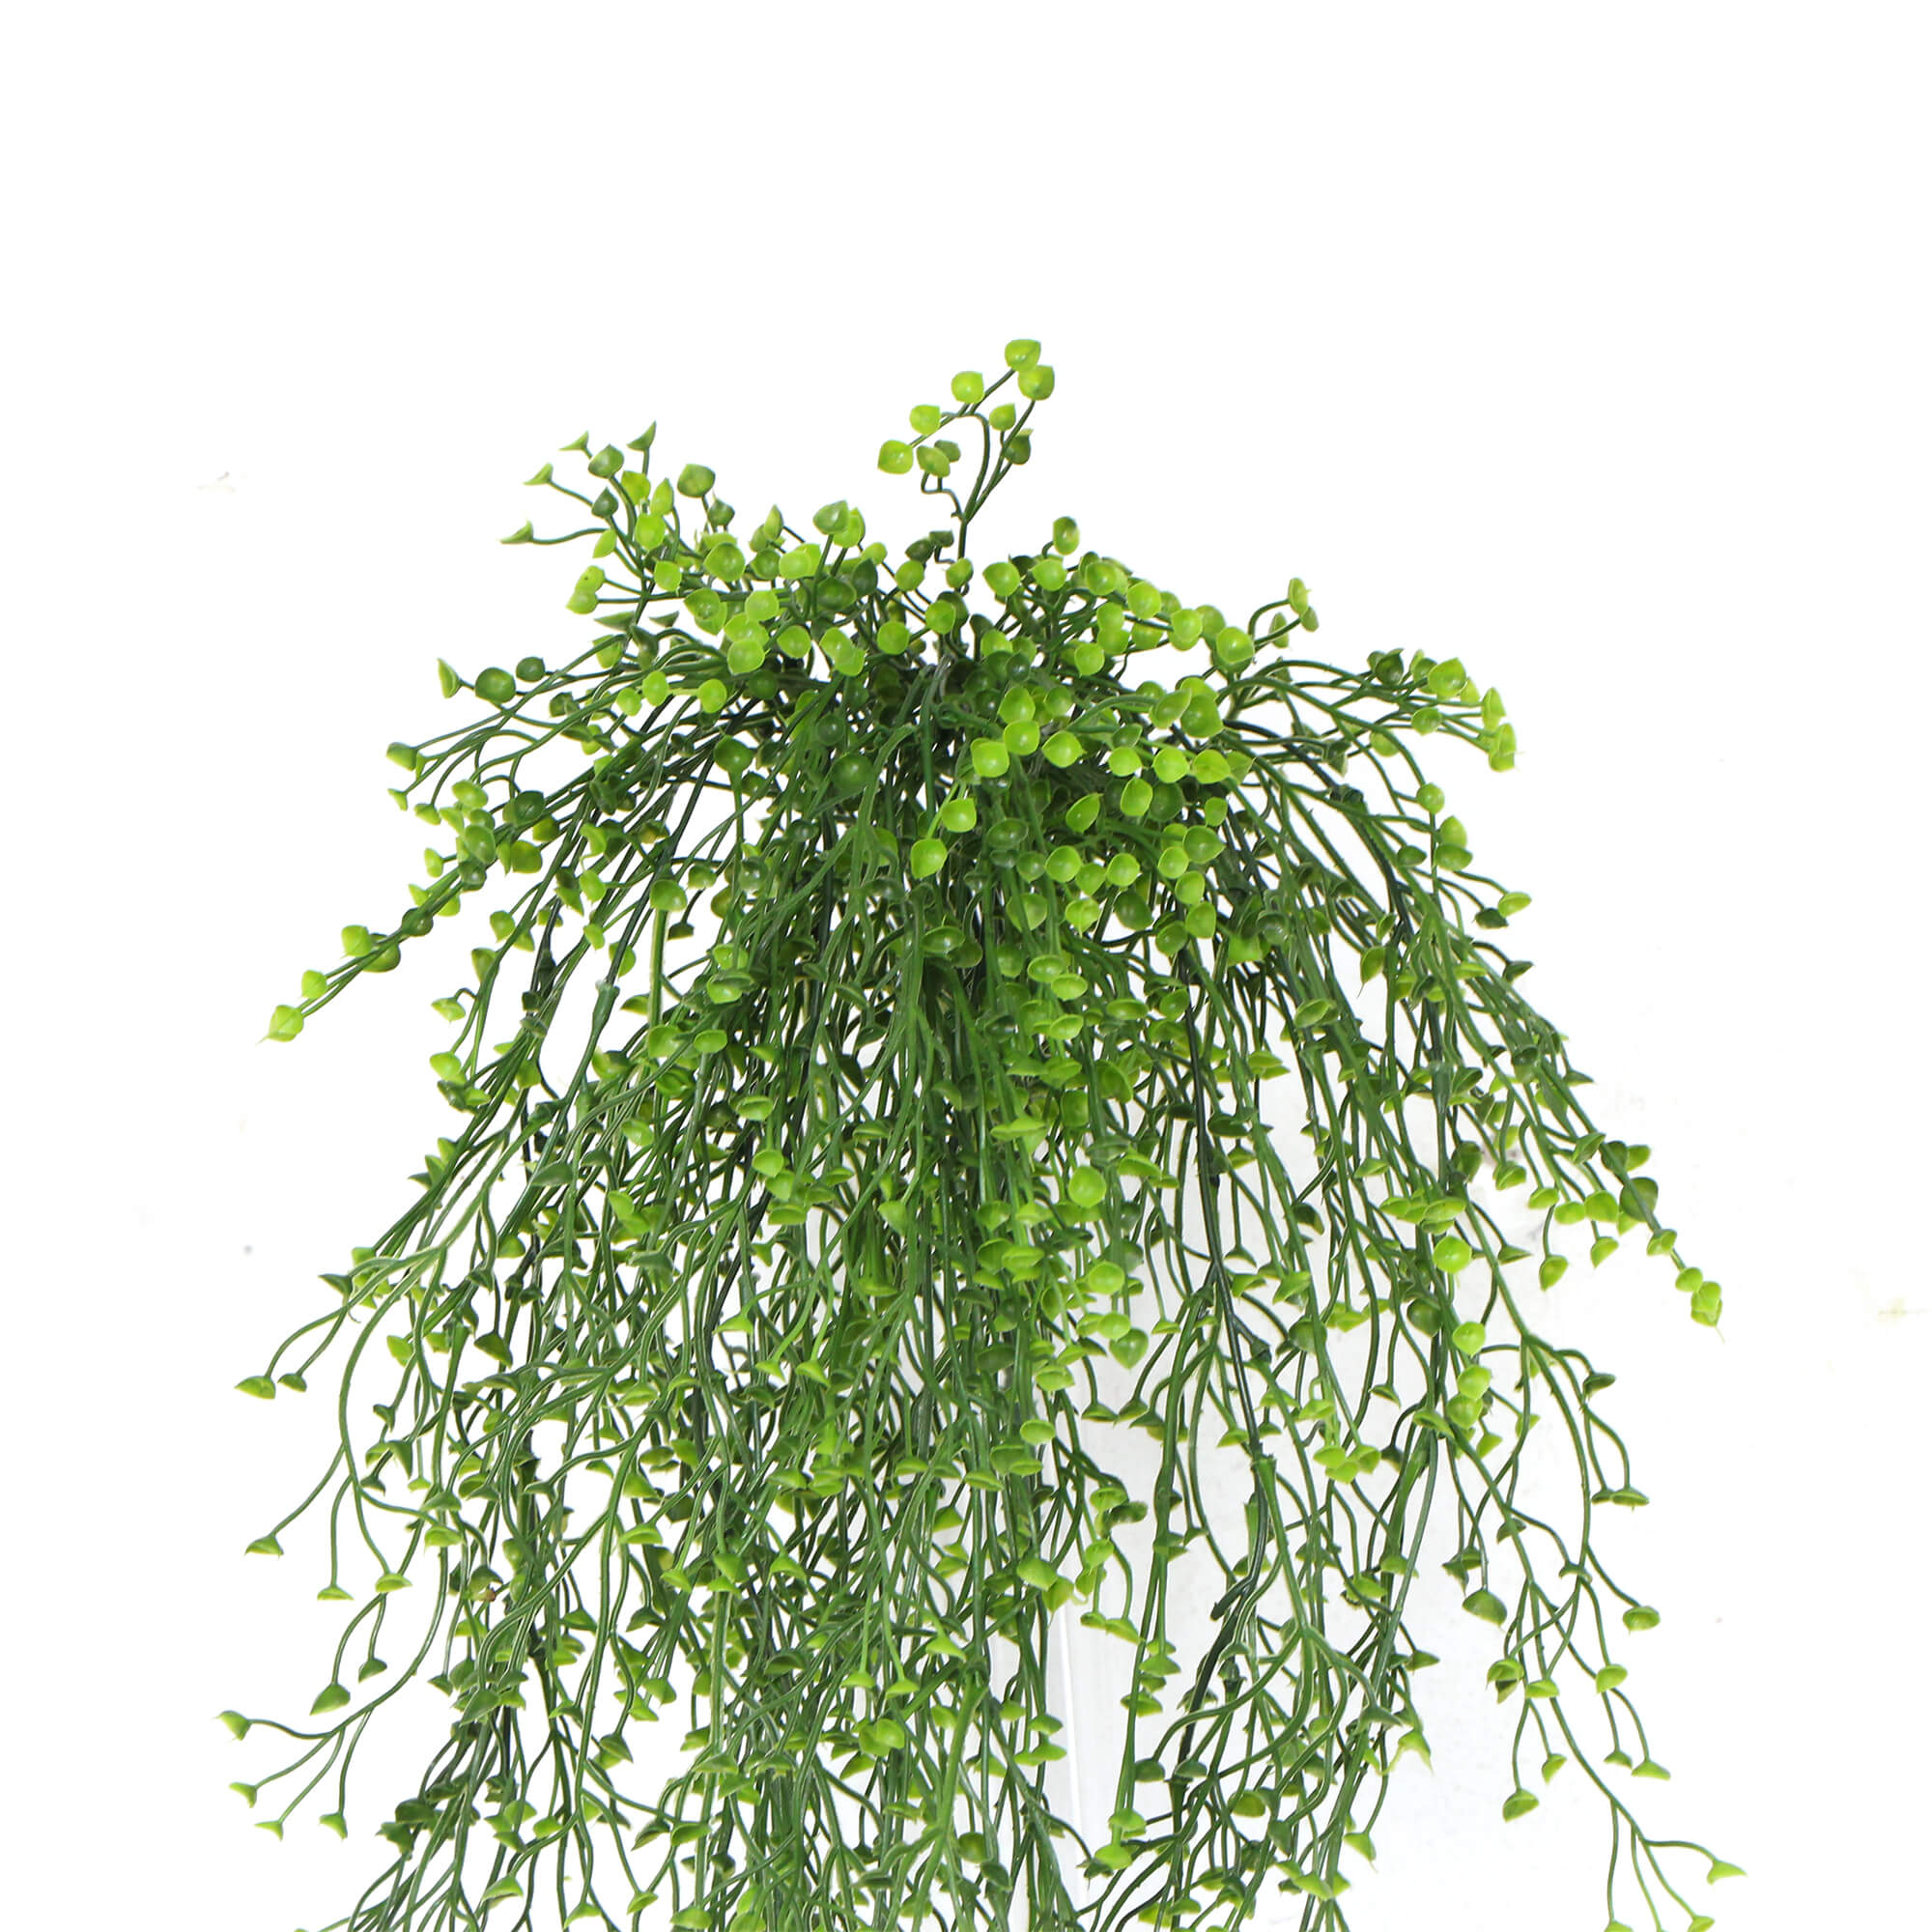 Artificial Hanging Plant (Natural Green) UV Resistant 90cm - Designer Vertical Gardens hanging fern hanging garland